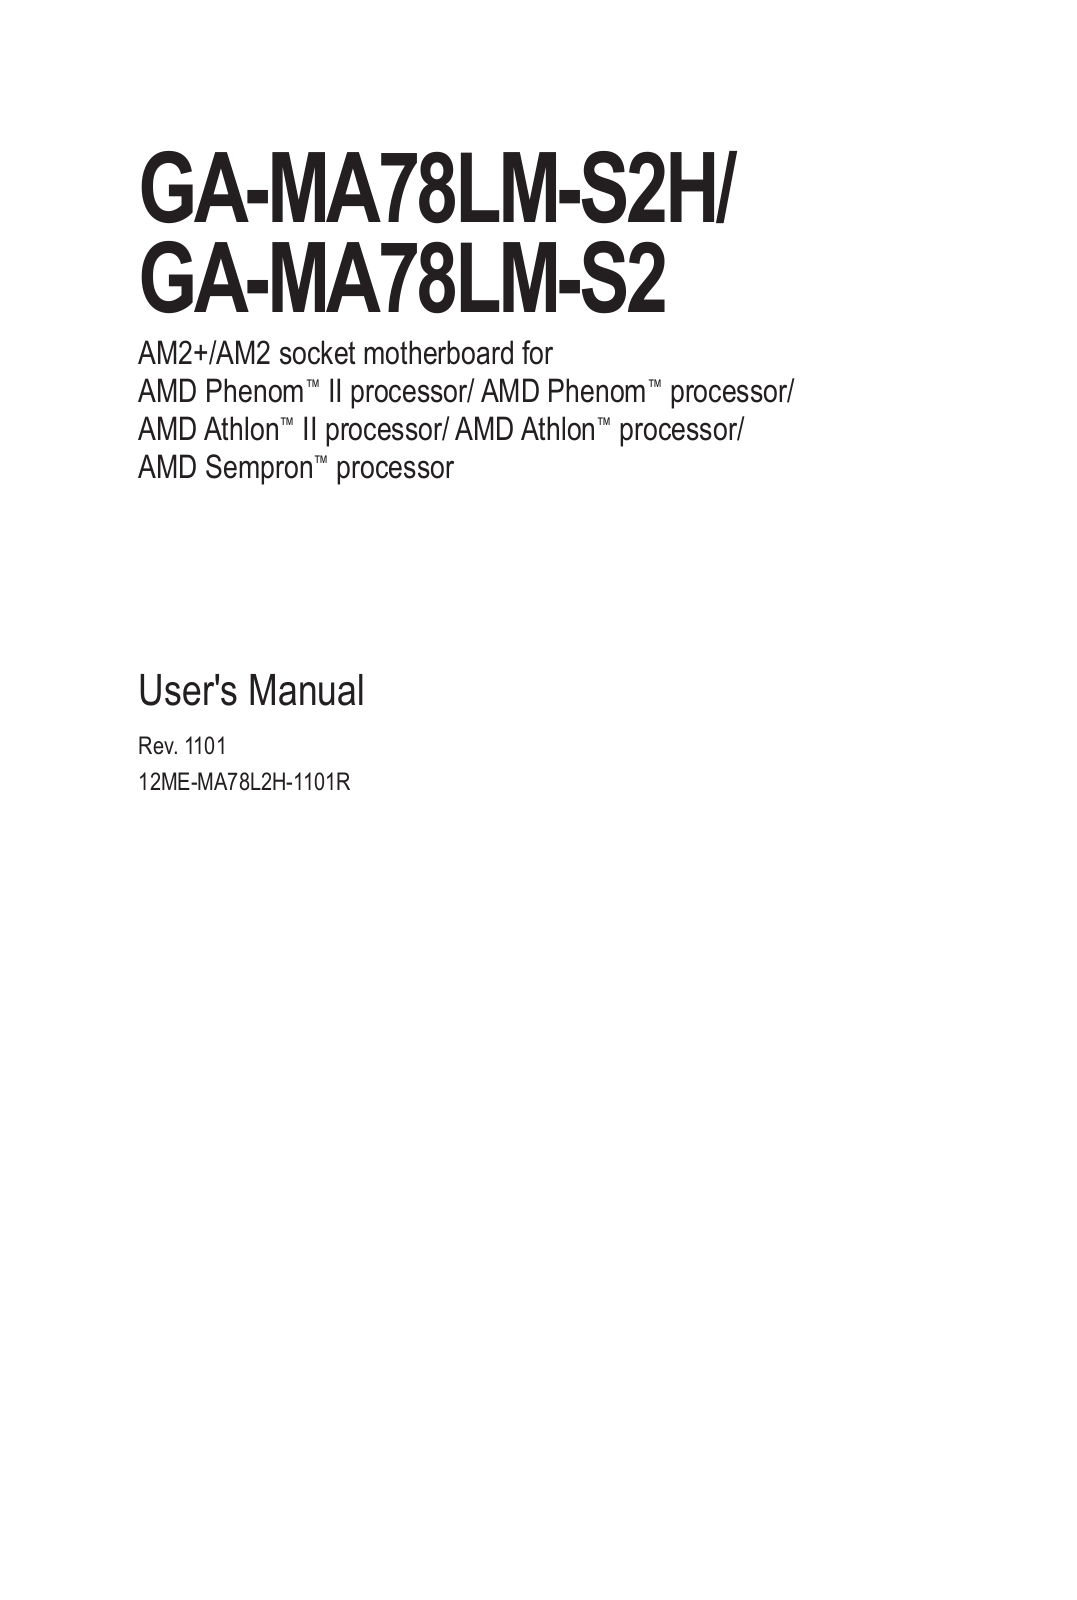 GIGABYTE GA-MA78LM-S2, GA-MA78LM-S2H Owner's Manual